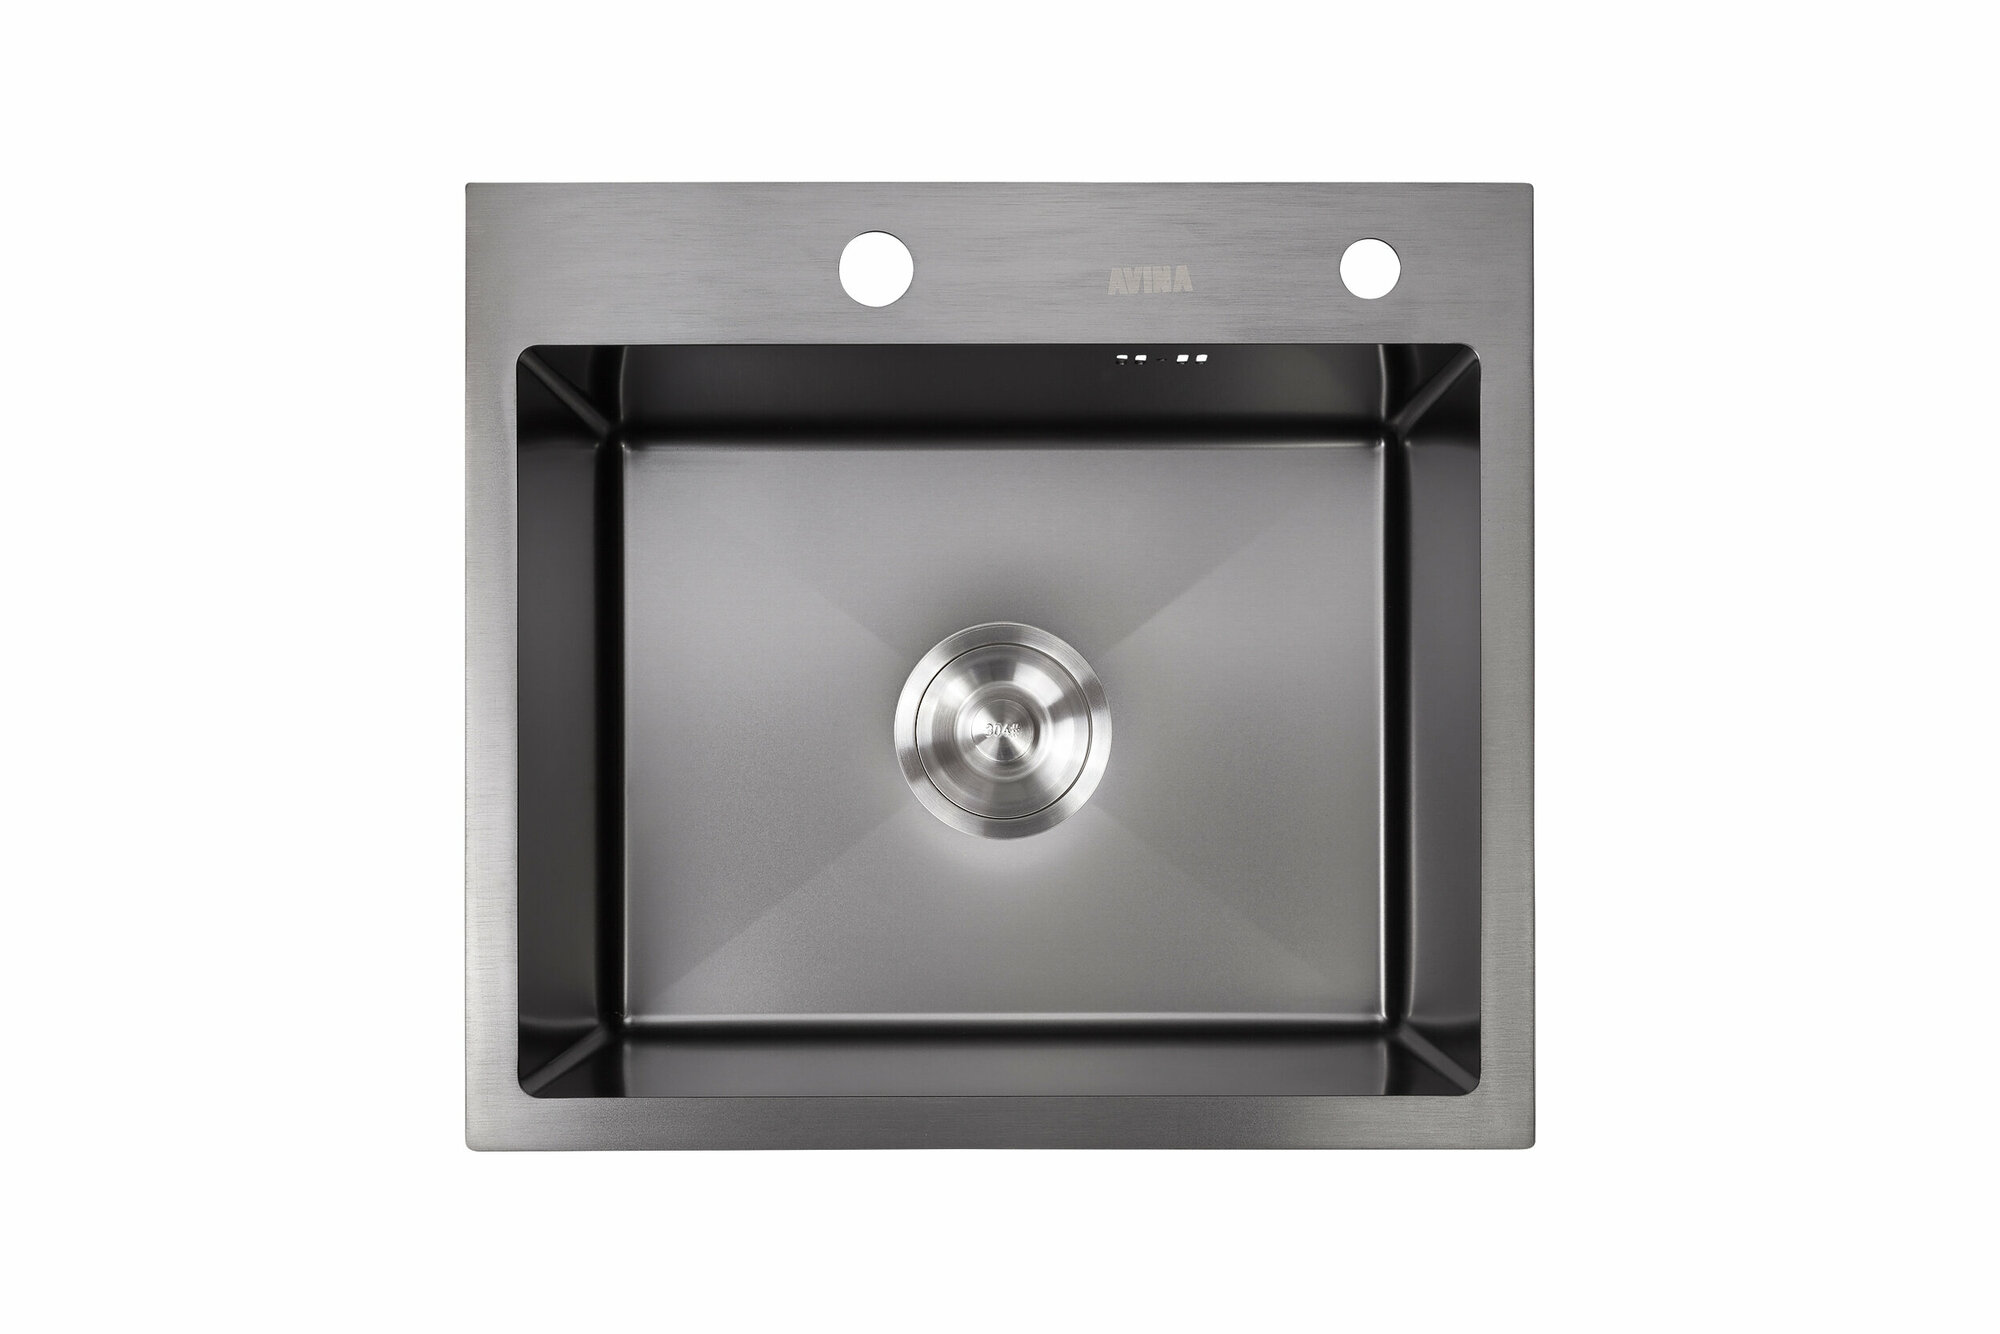 Кухонная мойка AVINA 5045 Black, из нержавеющей стали, толщина 3мм*1,5 мм. Дозатор, сифон в комплекте. Глубина мойки 230 мм.